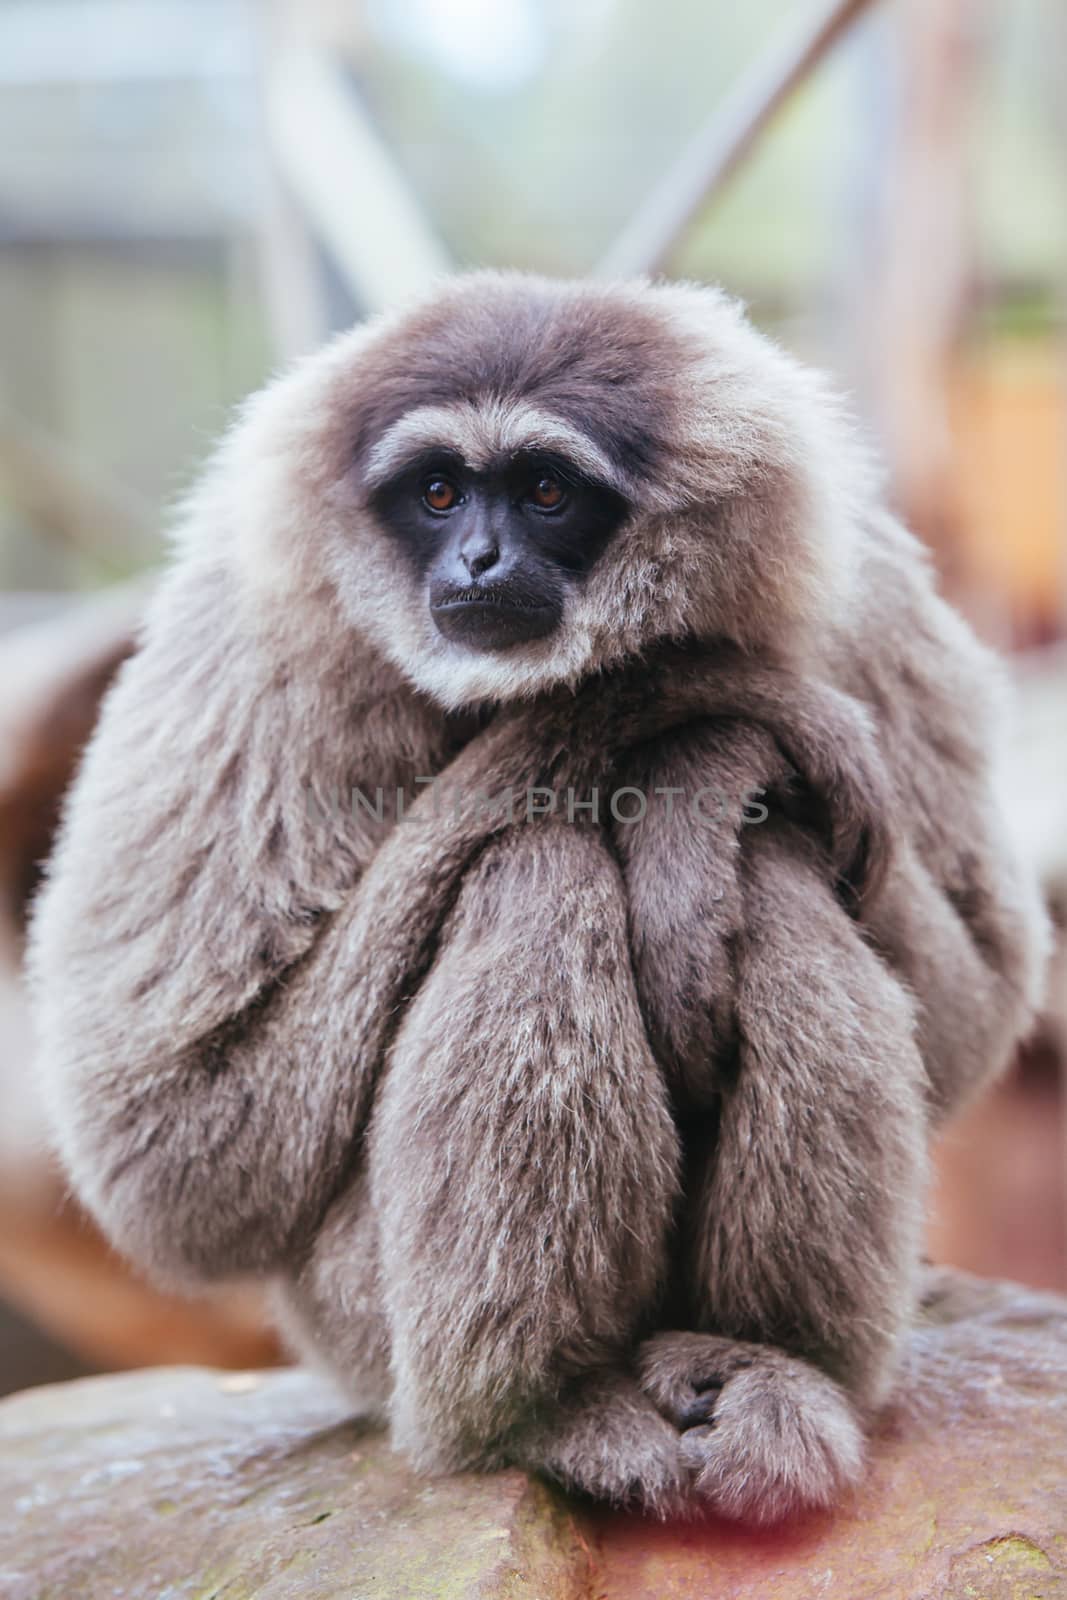 A Silvery Gibbon in Australia by FiledIMAGE